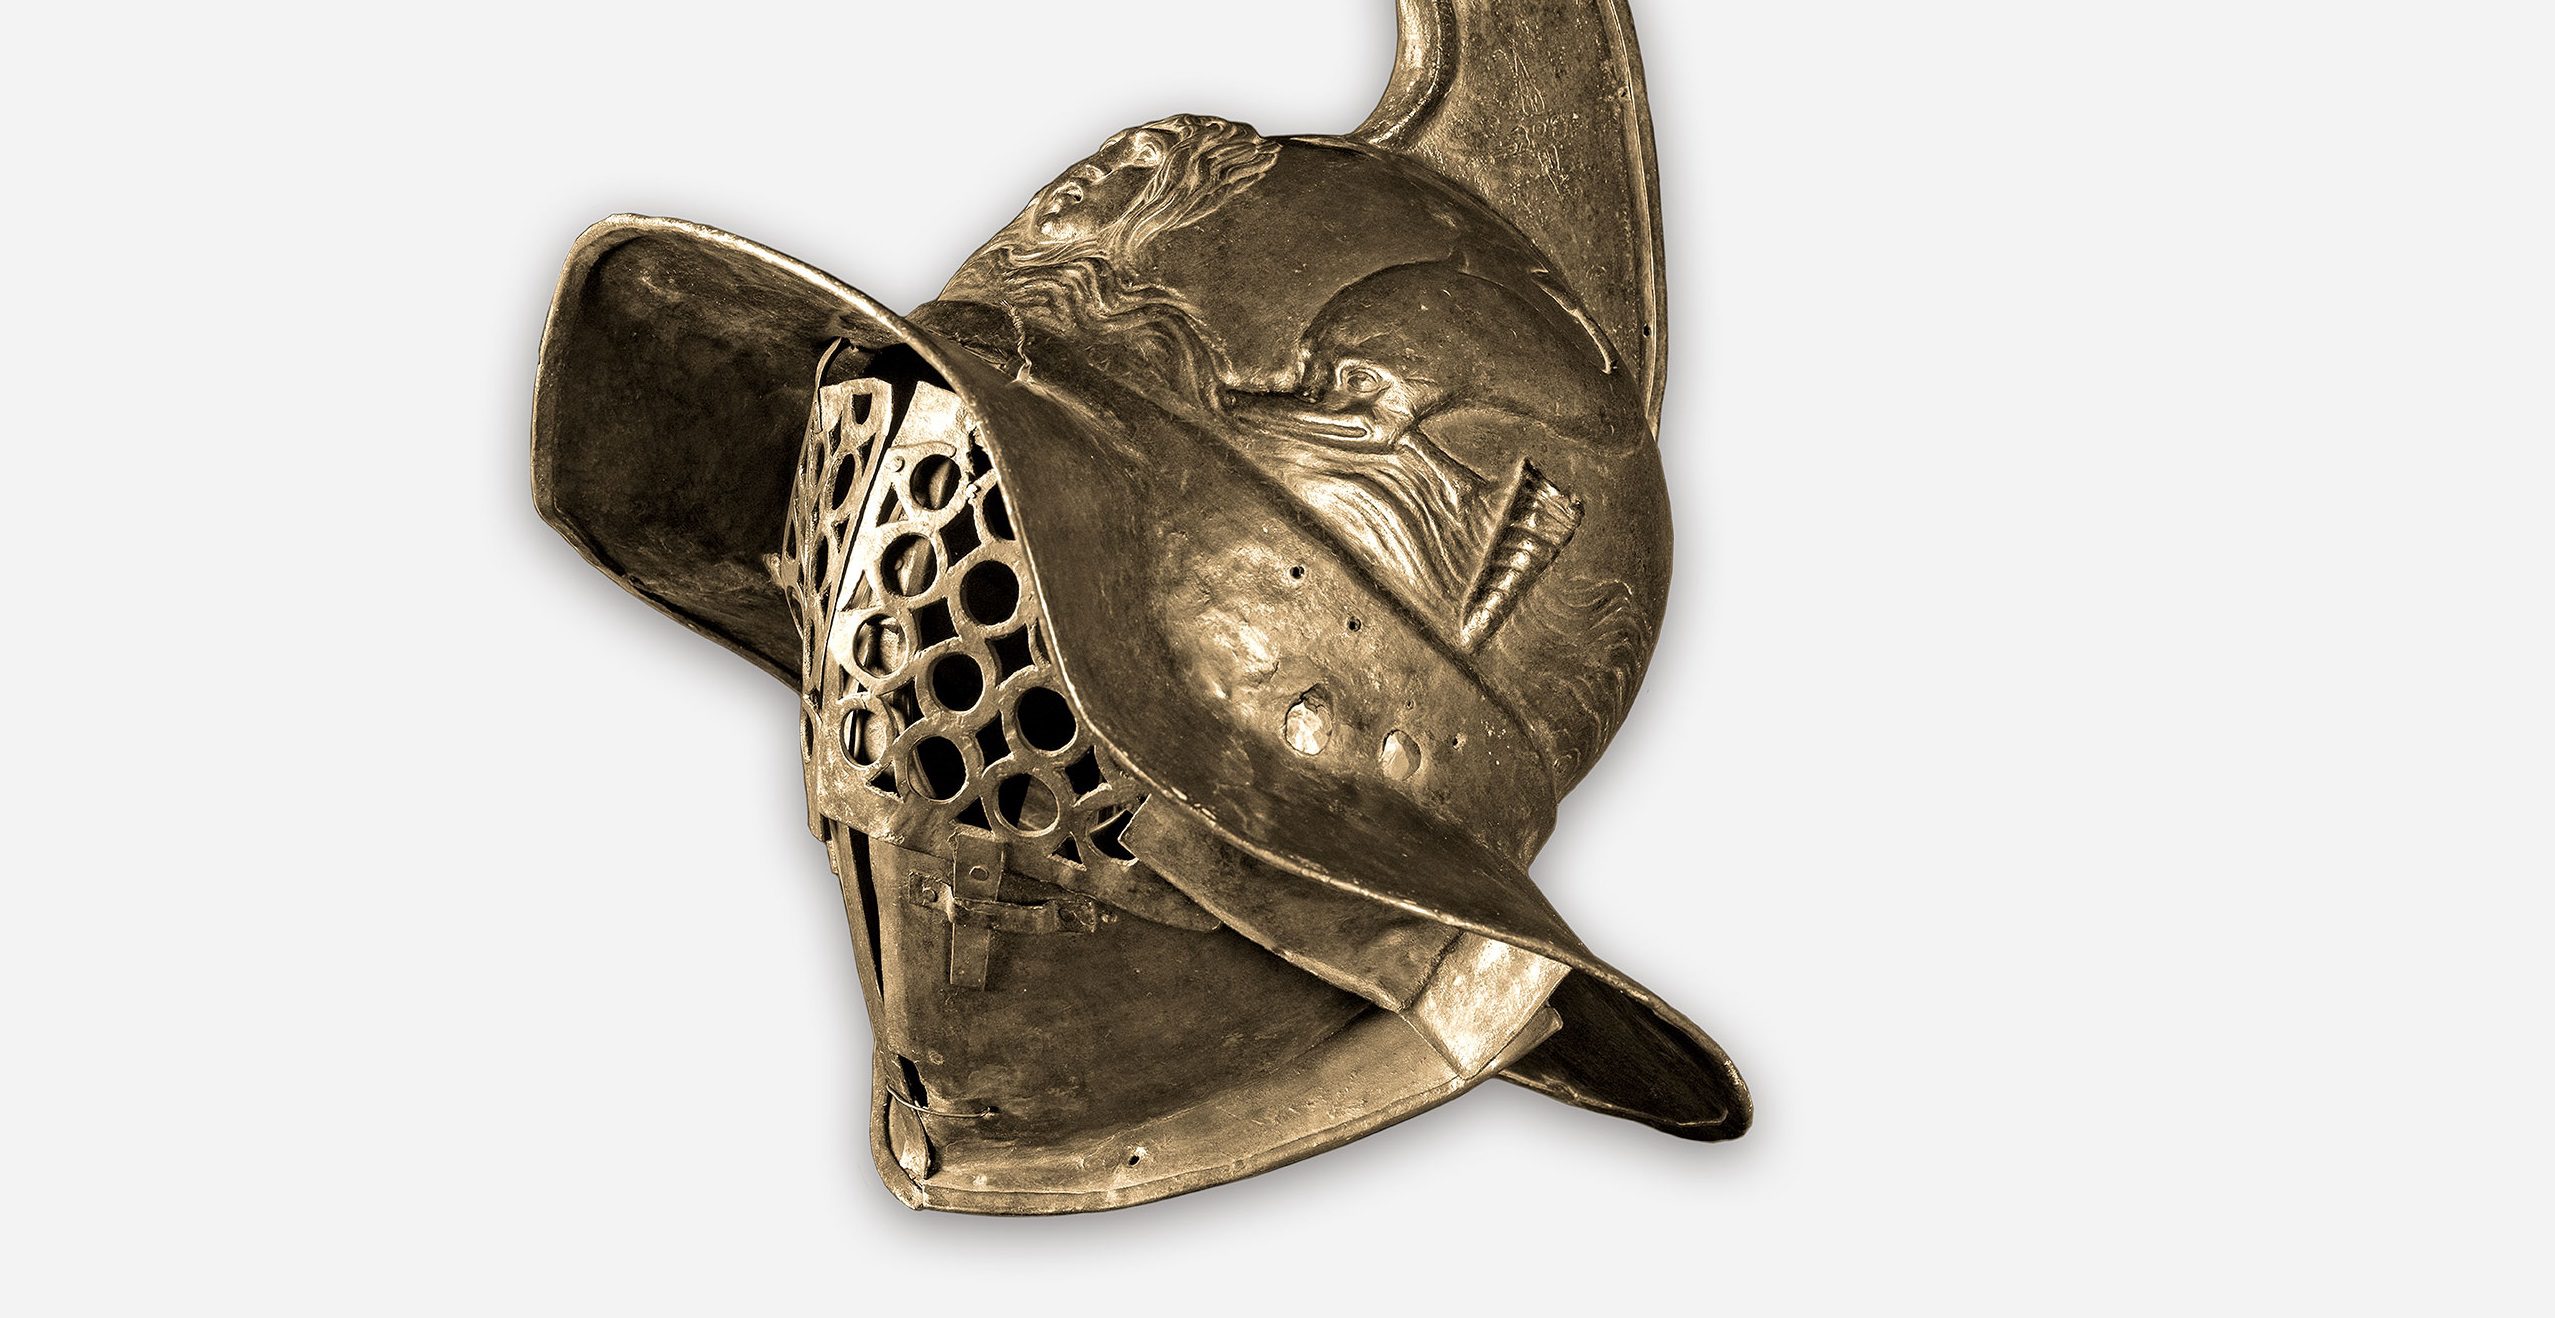 Casco de un Thraex, Pompeya, Cuartel de los gladiadores, 50–79 d.C. Museo Arqueológico Nacional, Nápoles. Este casco perteneció a un thraex, un gladiador armado como los guerreros tracios del sureste de Europa.